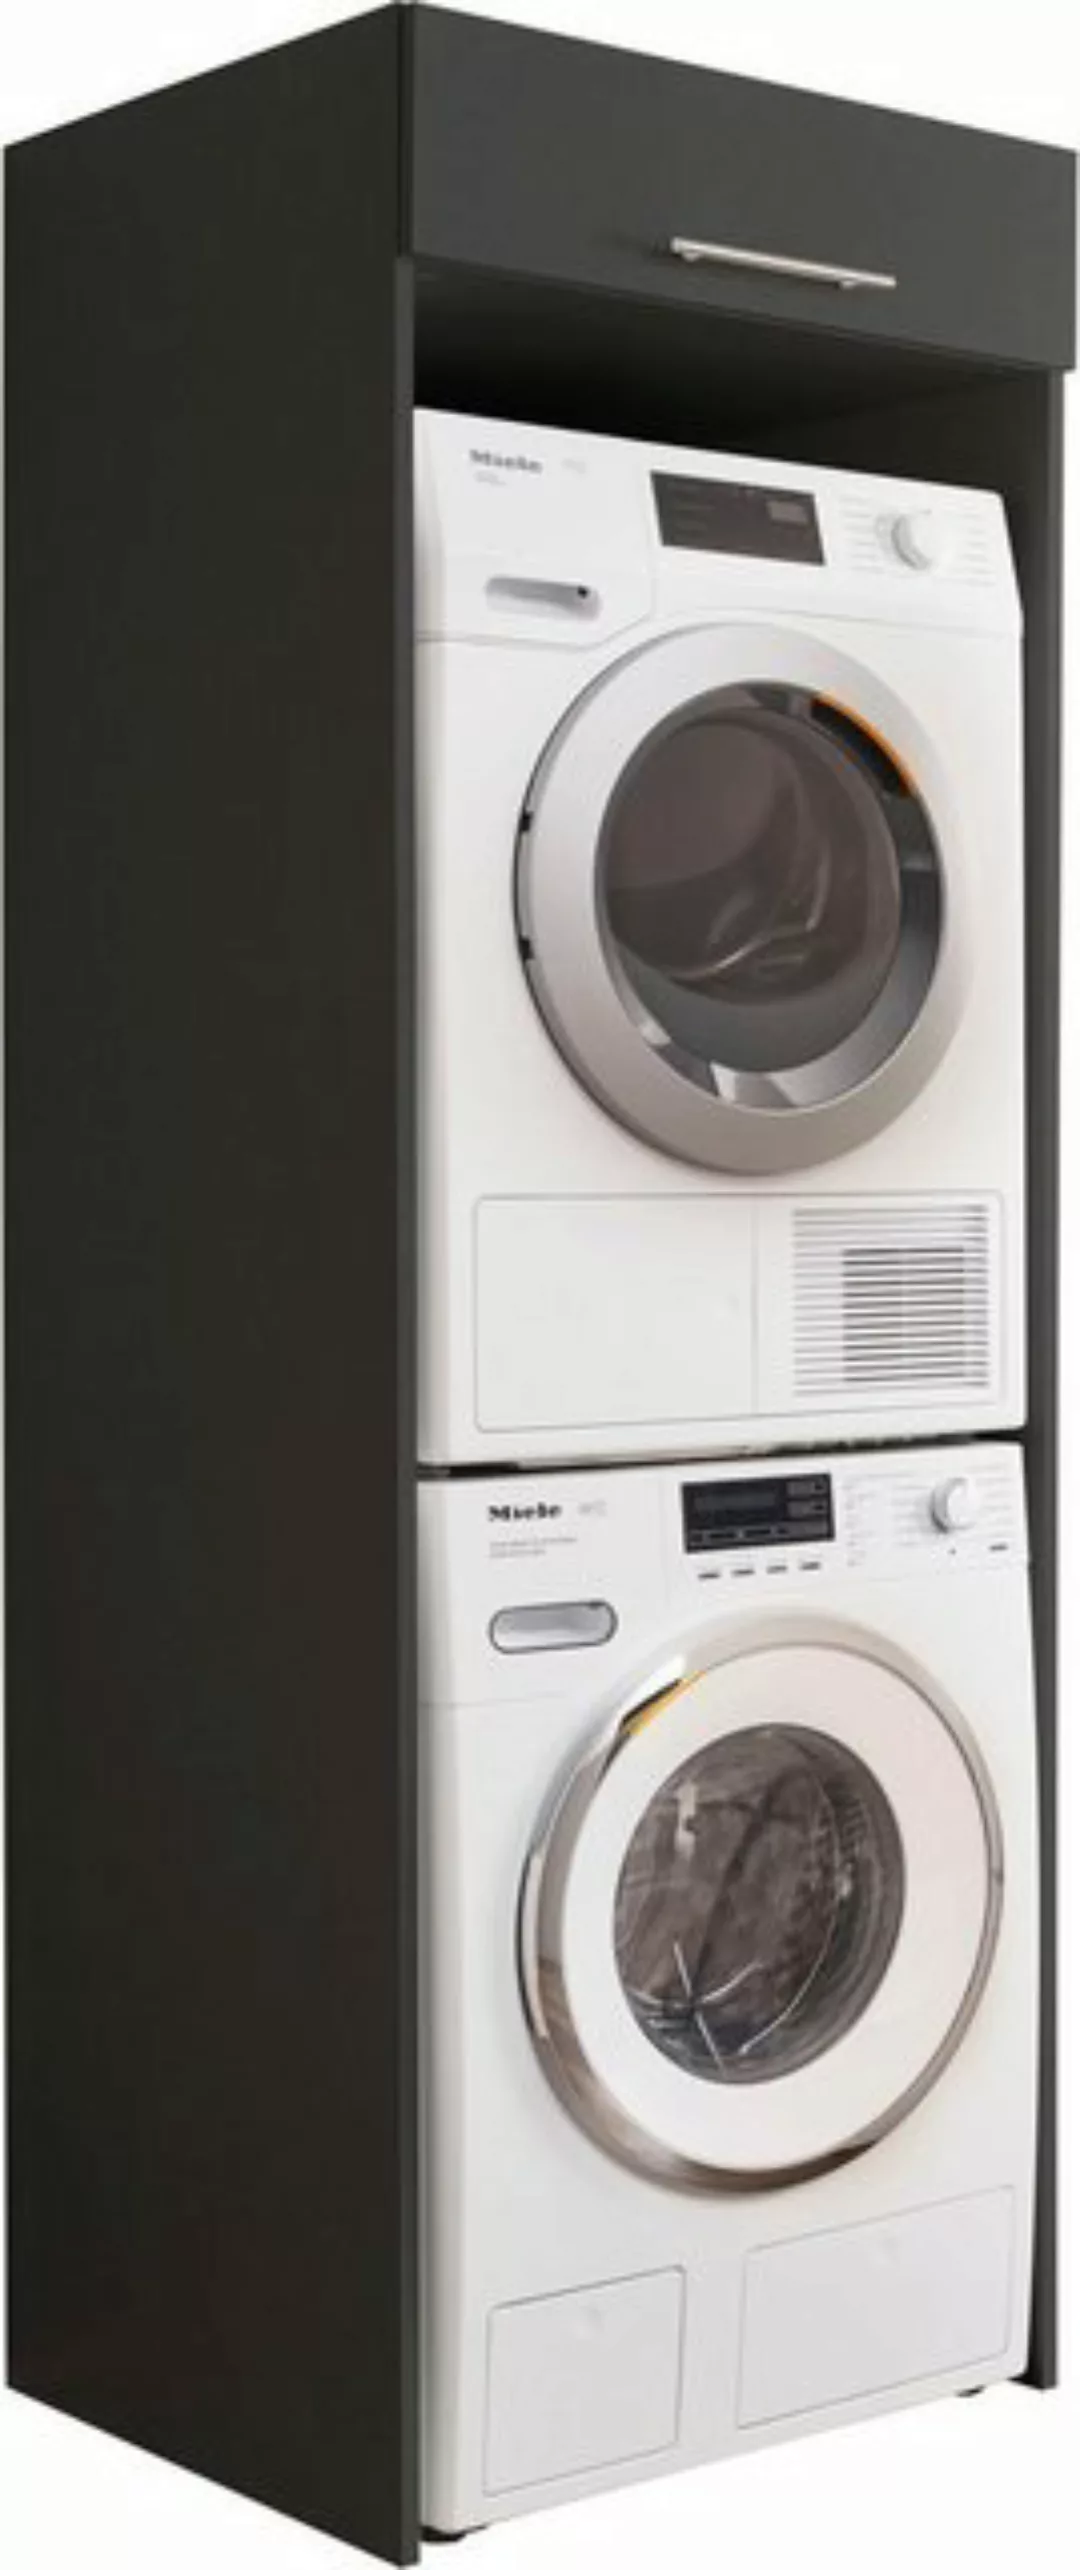 Bega Consult Mehrzweckschrank Waschküche LAUND Waschmaschinenschrank Überba günstig online kaufen